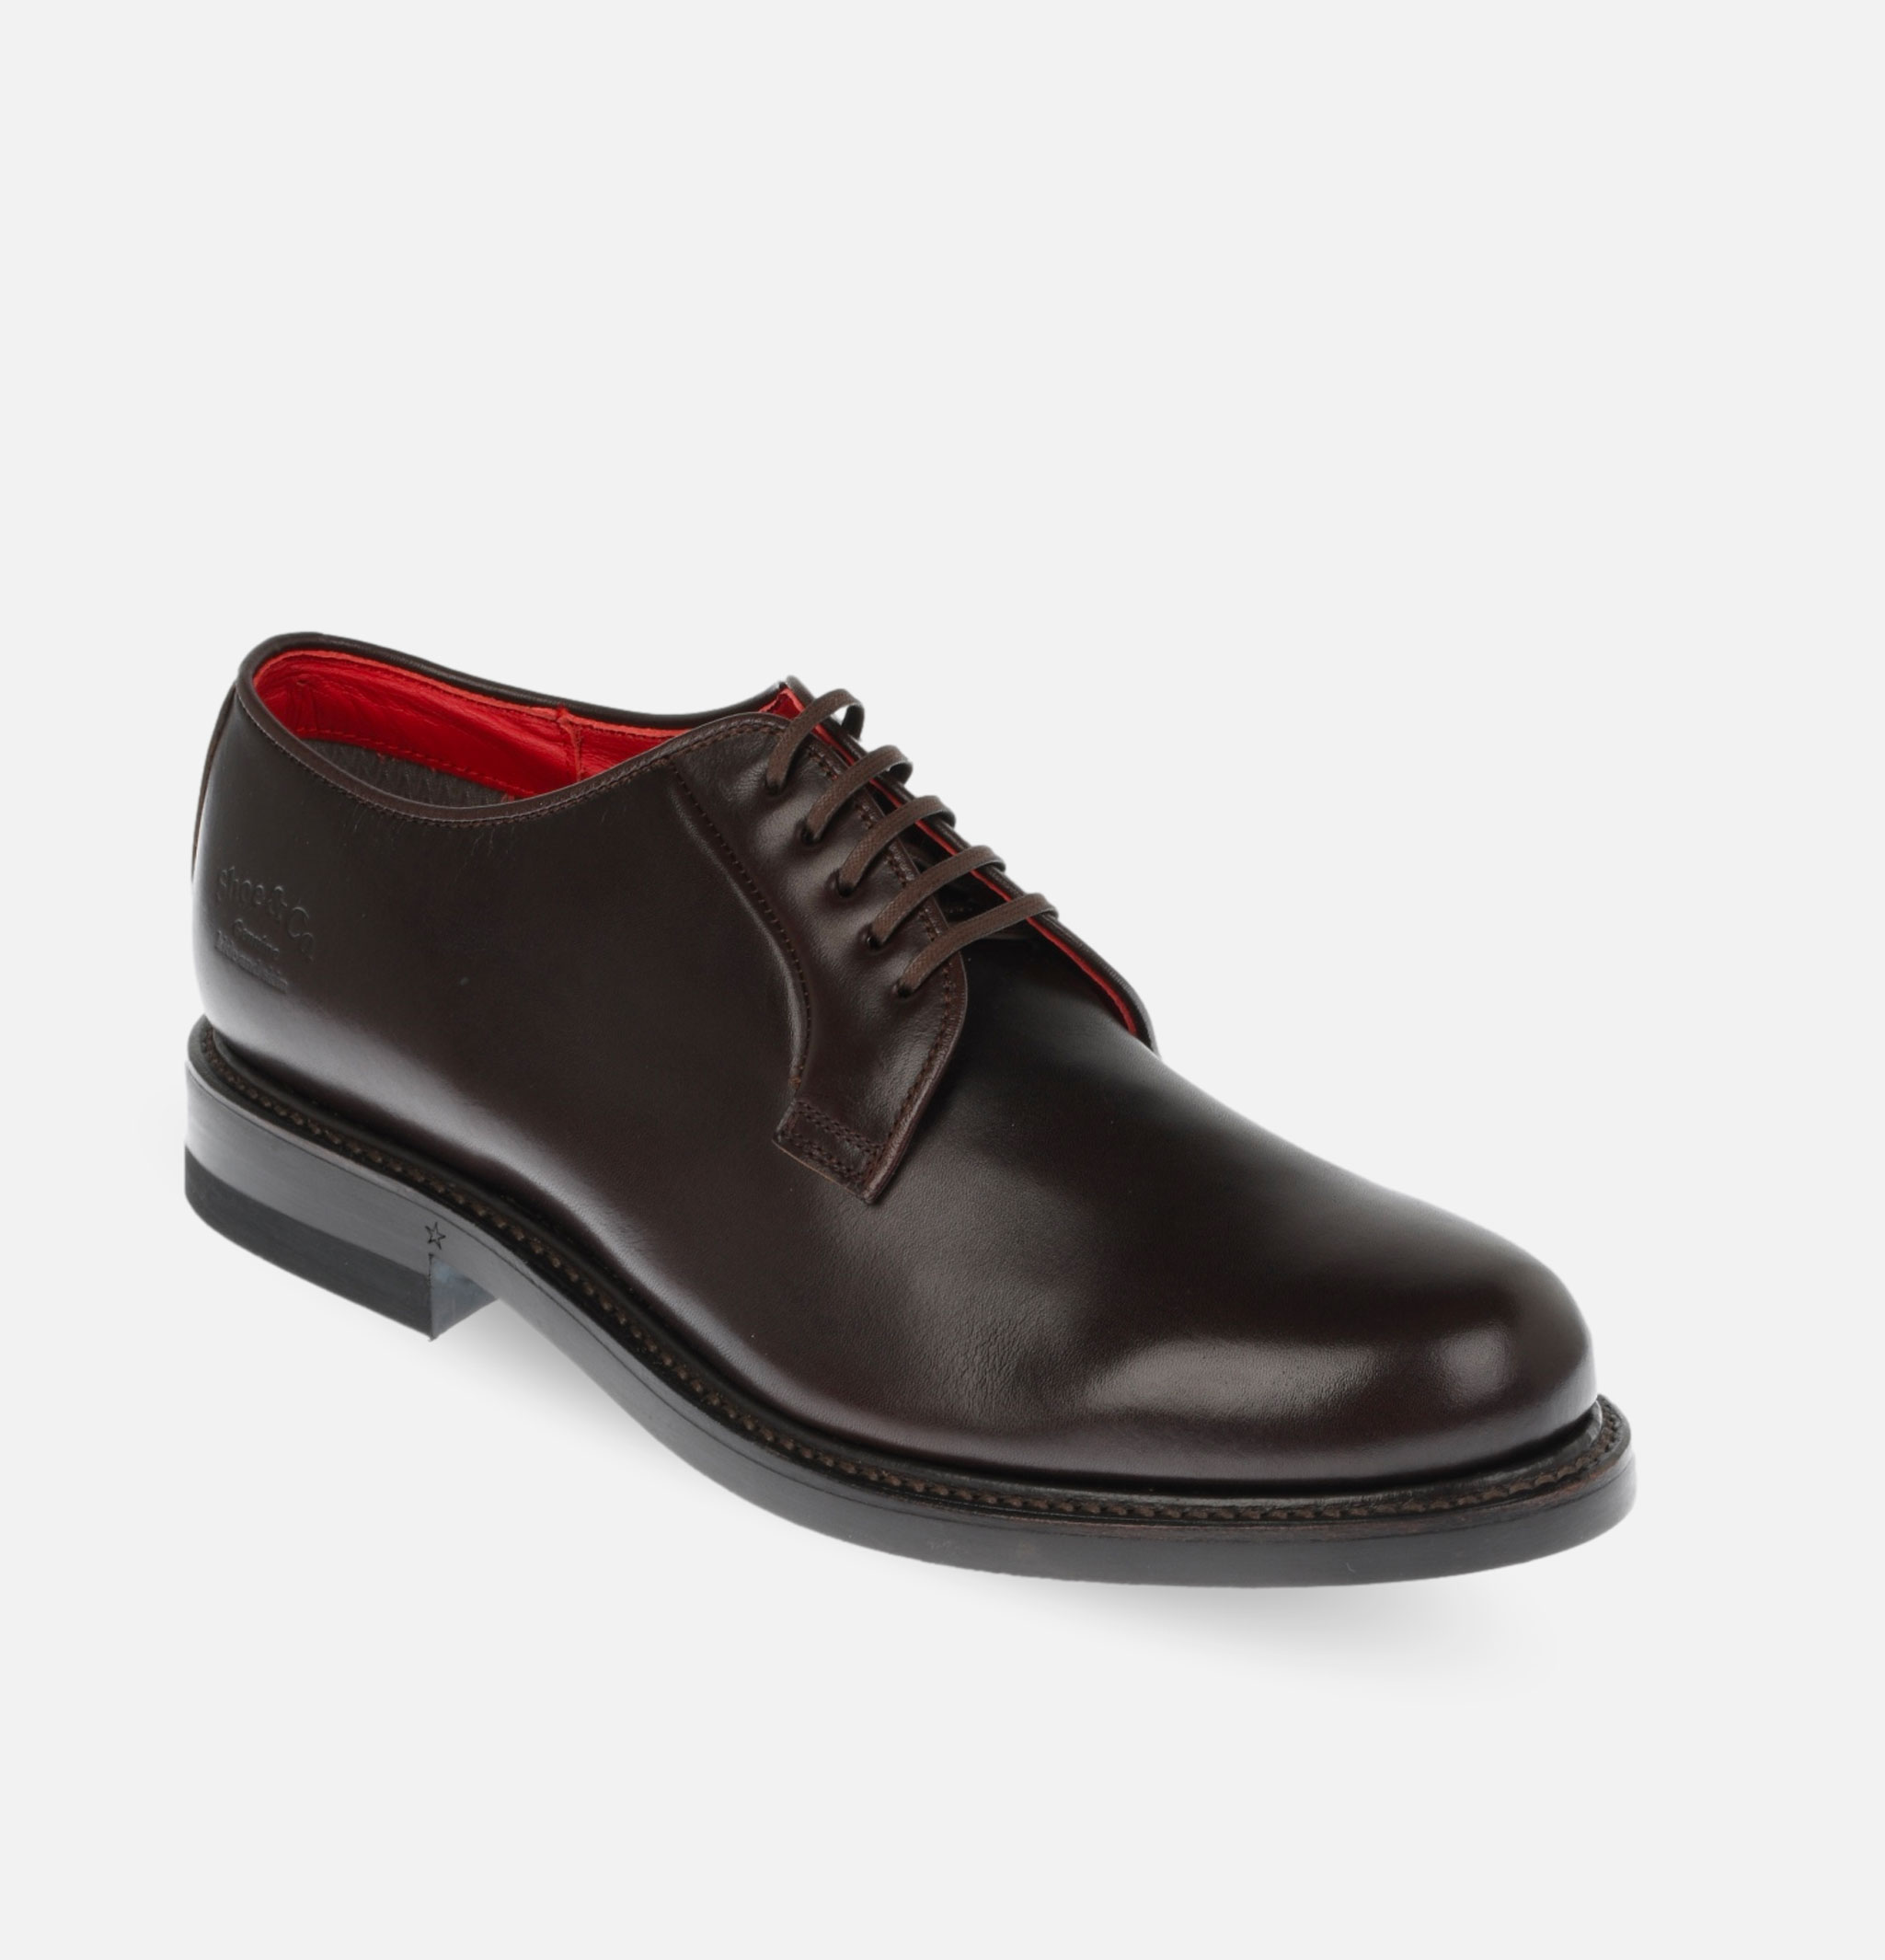 Regal Shoe & Co Plain-toe Shoe Brown Gore-tex